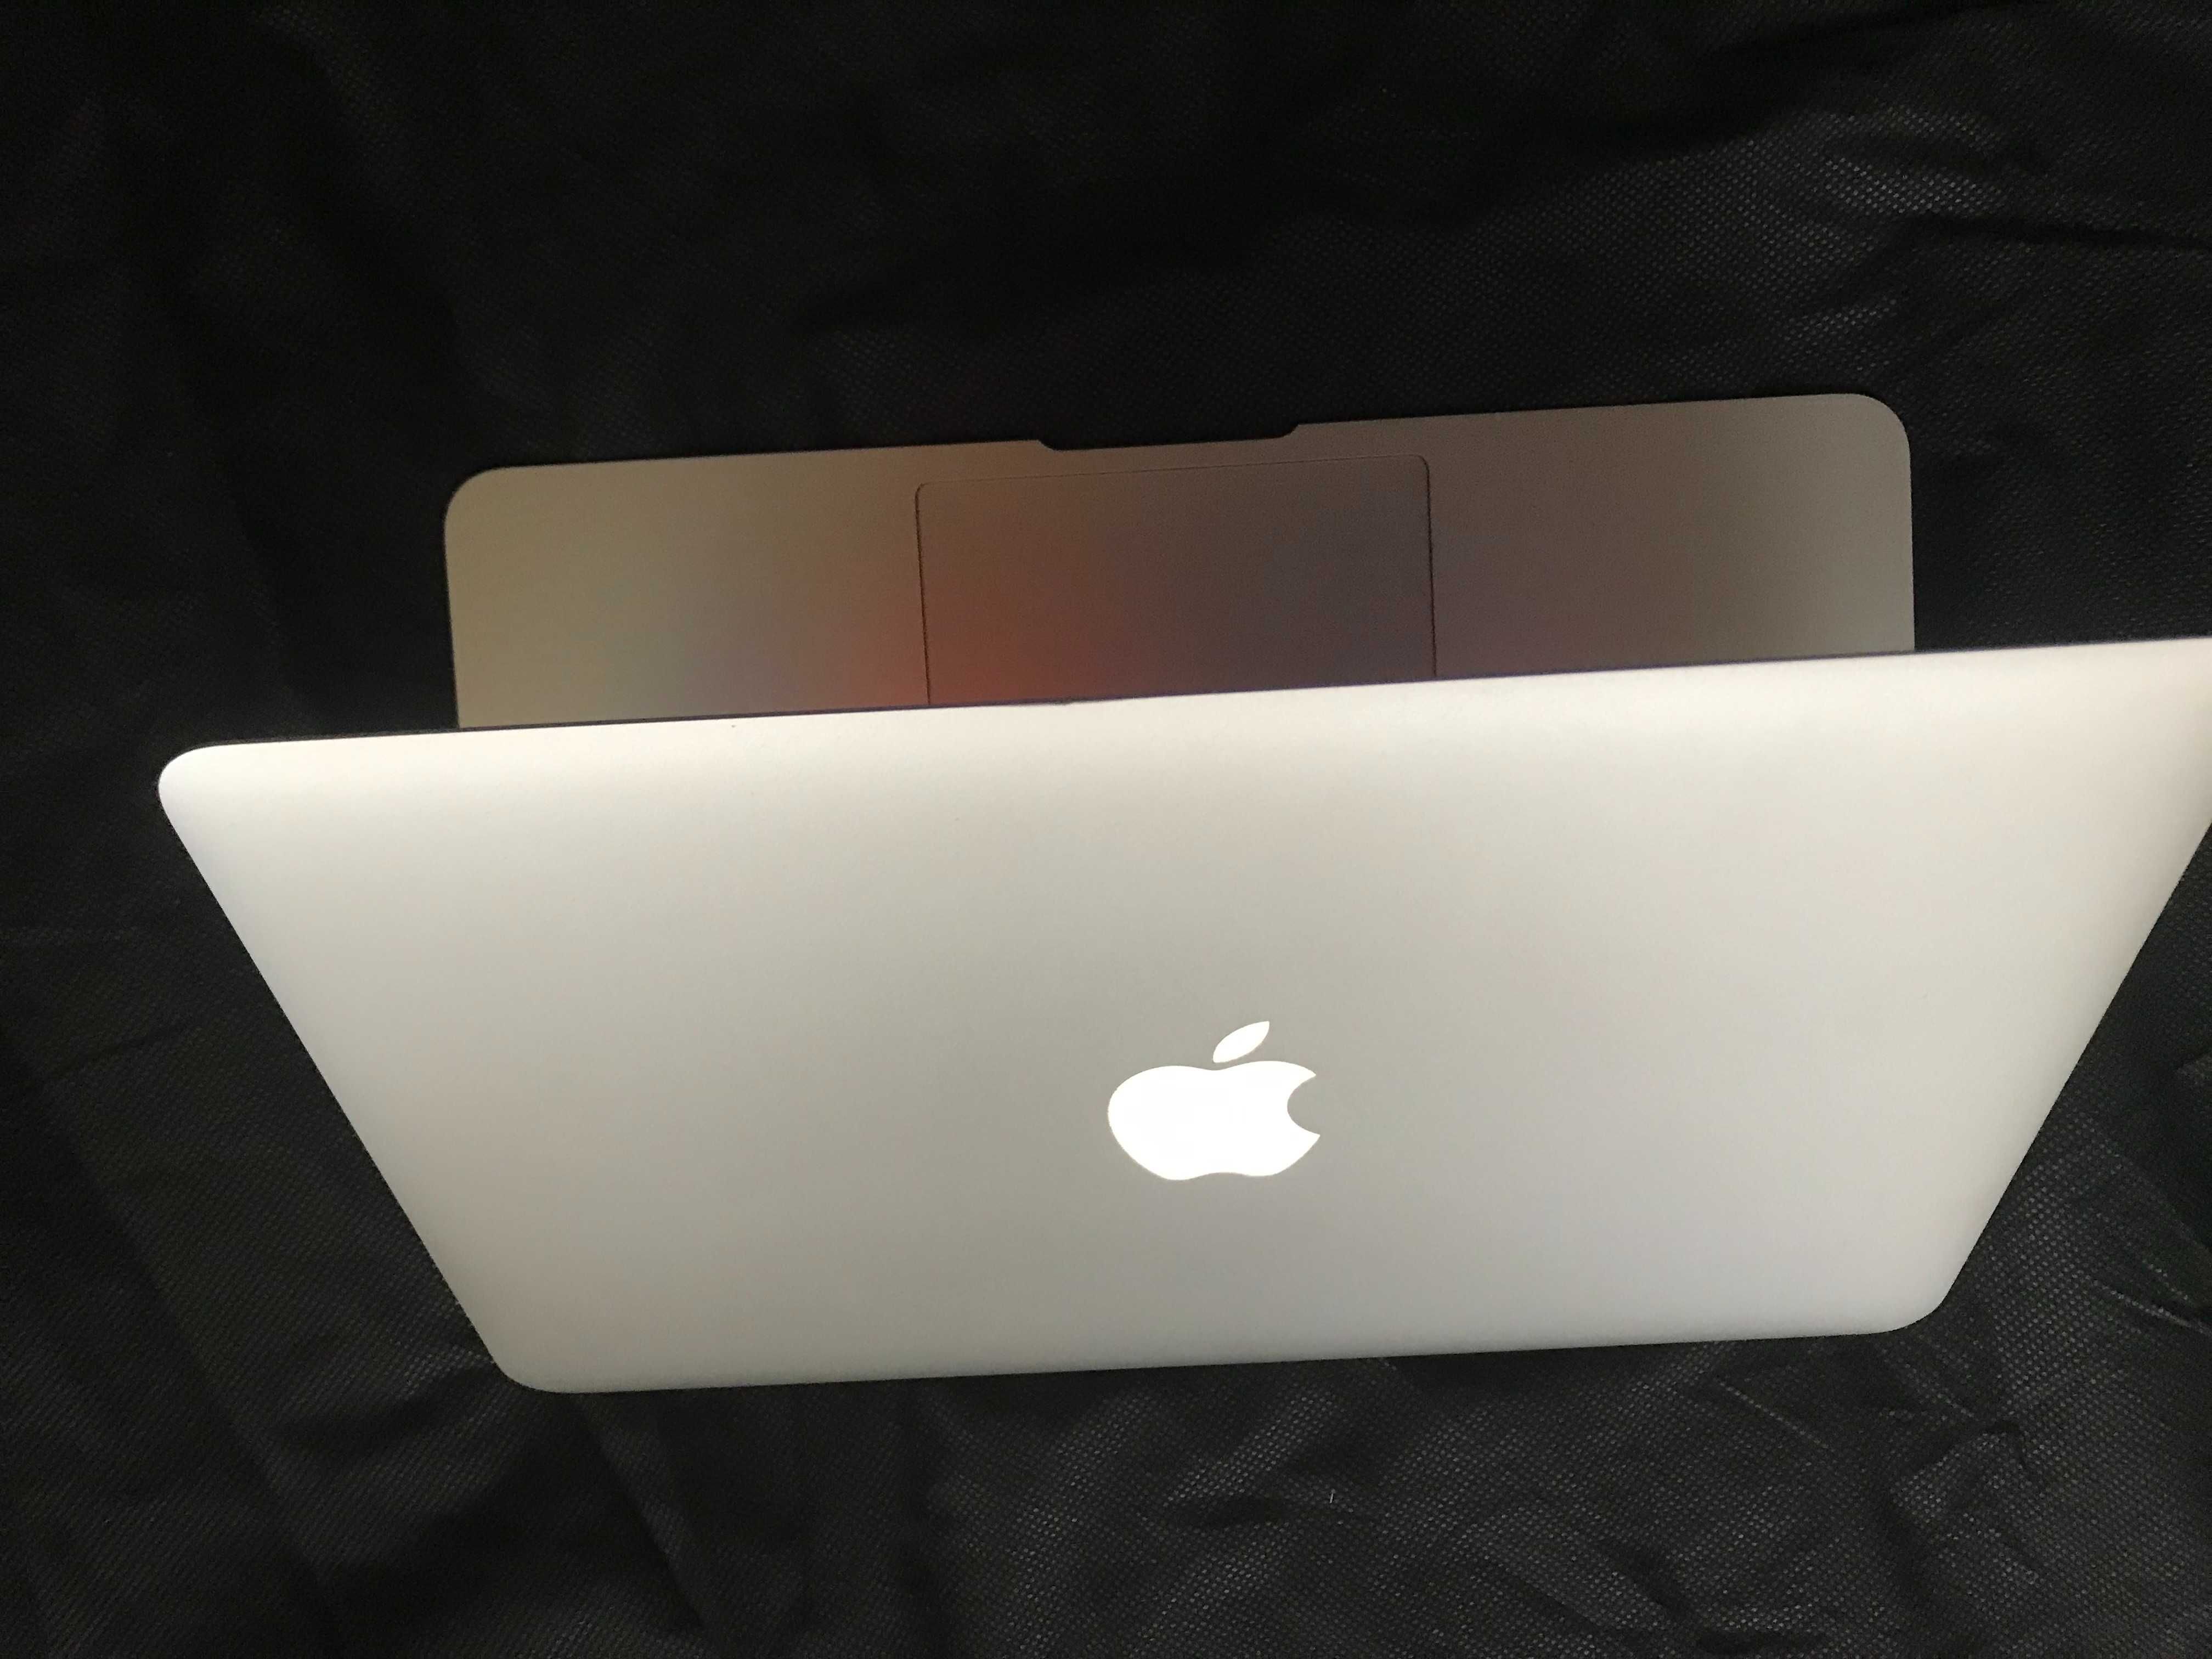 11" Core i5 MacBook Air A1465 (Early 2014)-КАТО НОВ